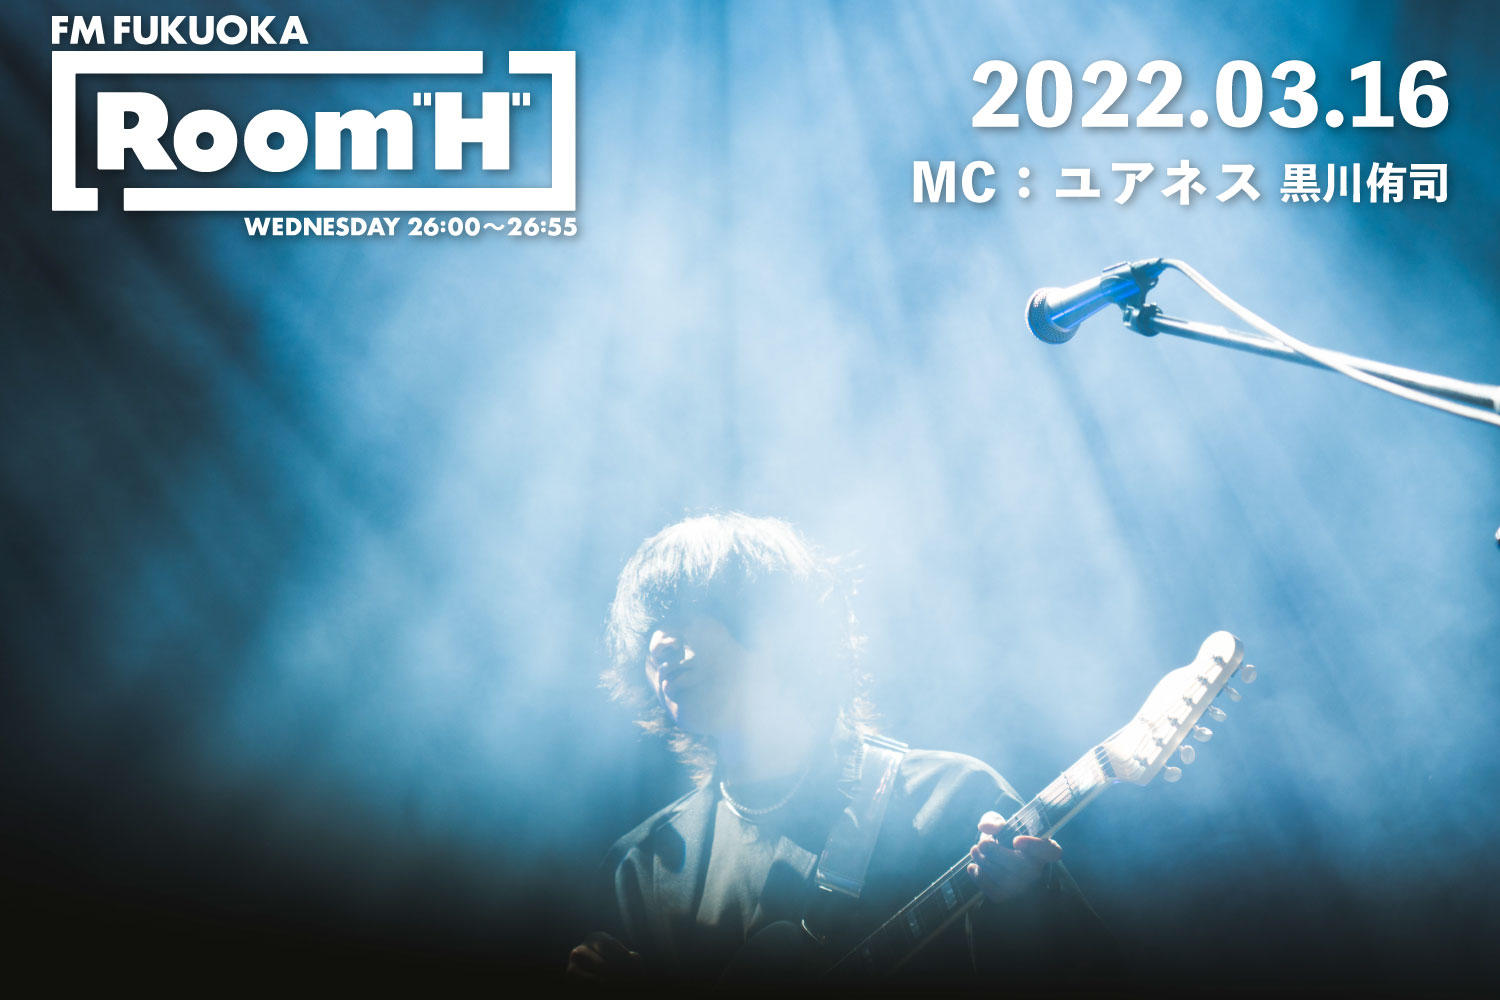 【読むラジオ】MC：黒川侑司(ユアネス) ワンマンライブツアー完走！「Room H」 -2022.03.16-